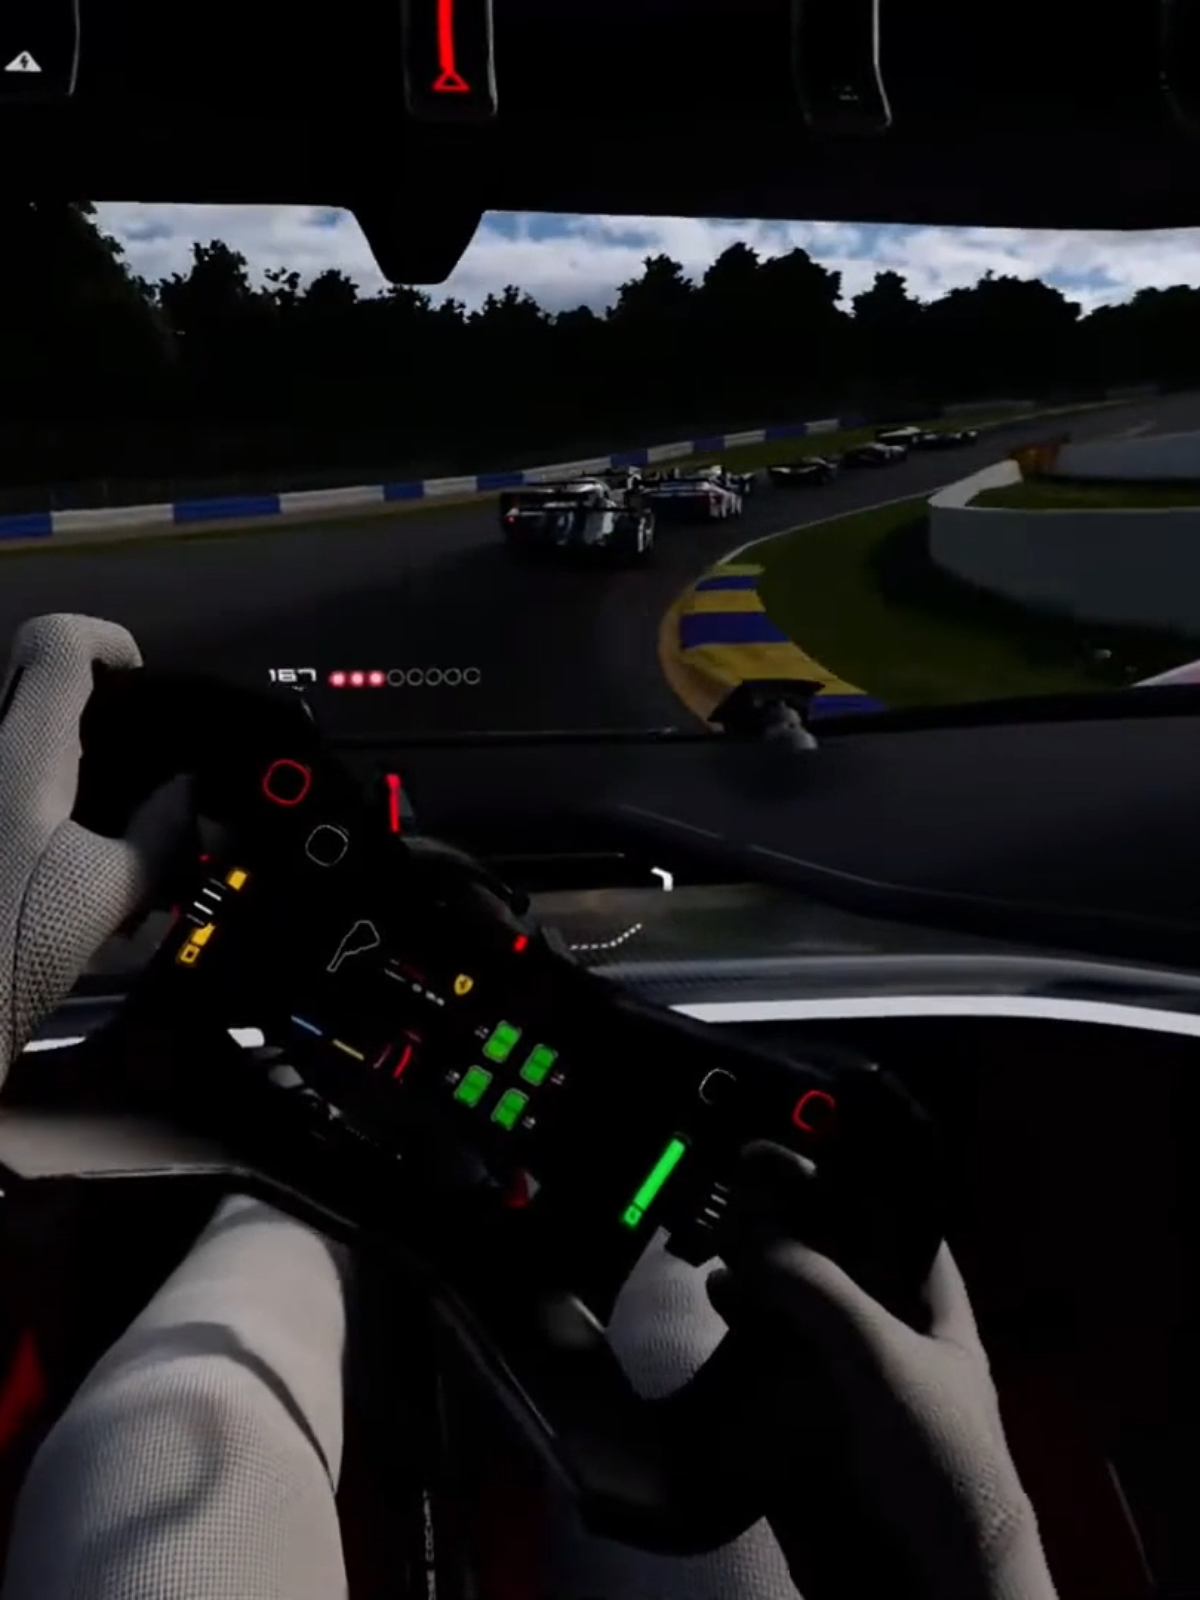 Gran Turismo 7 recebe novos carros e modo co-op local no PS5!